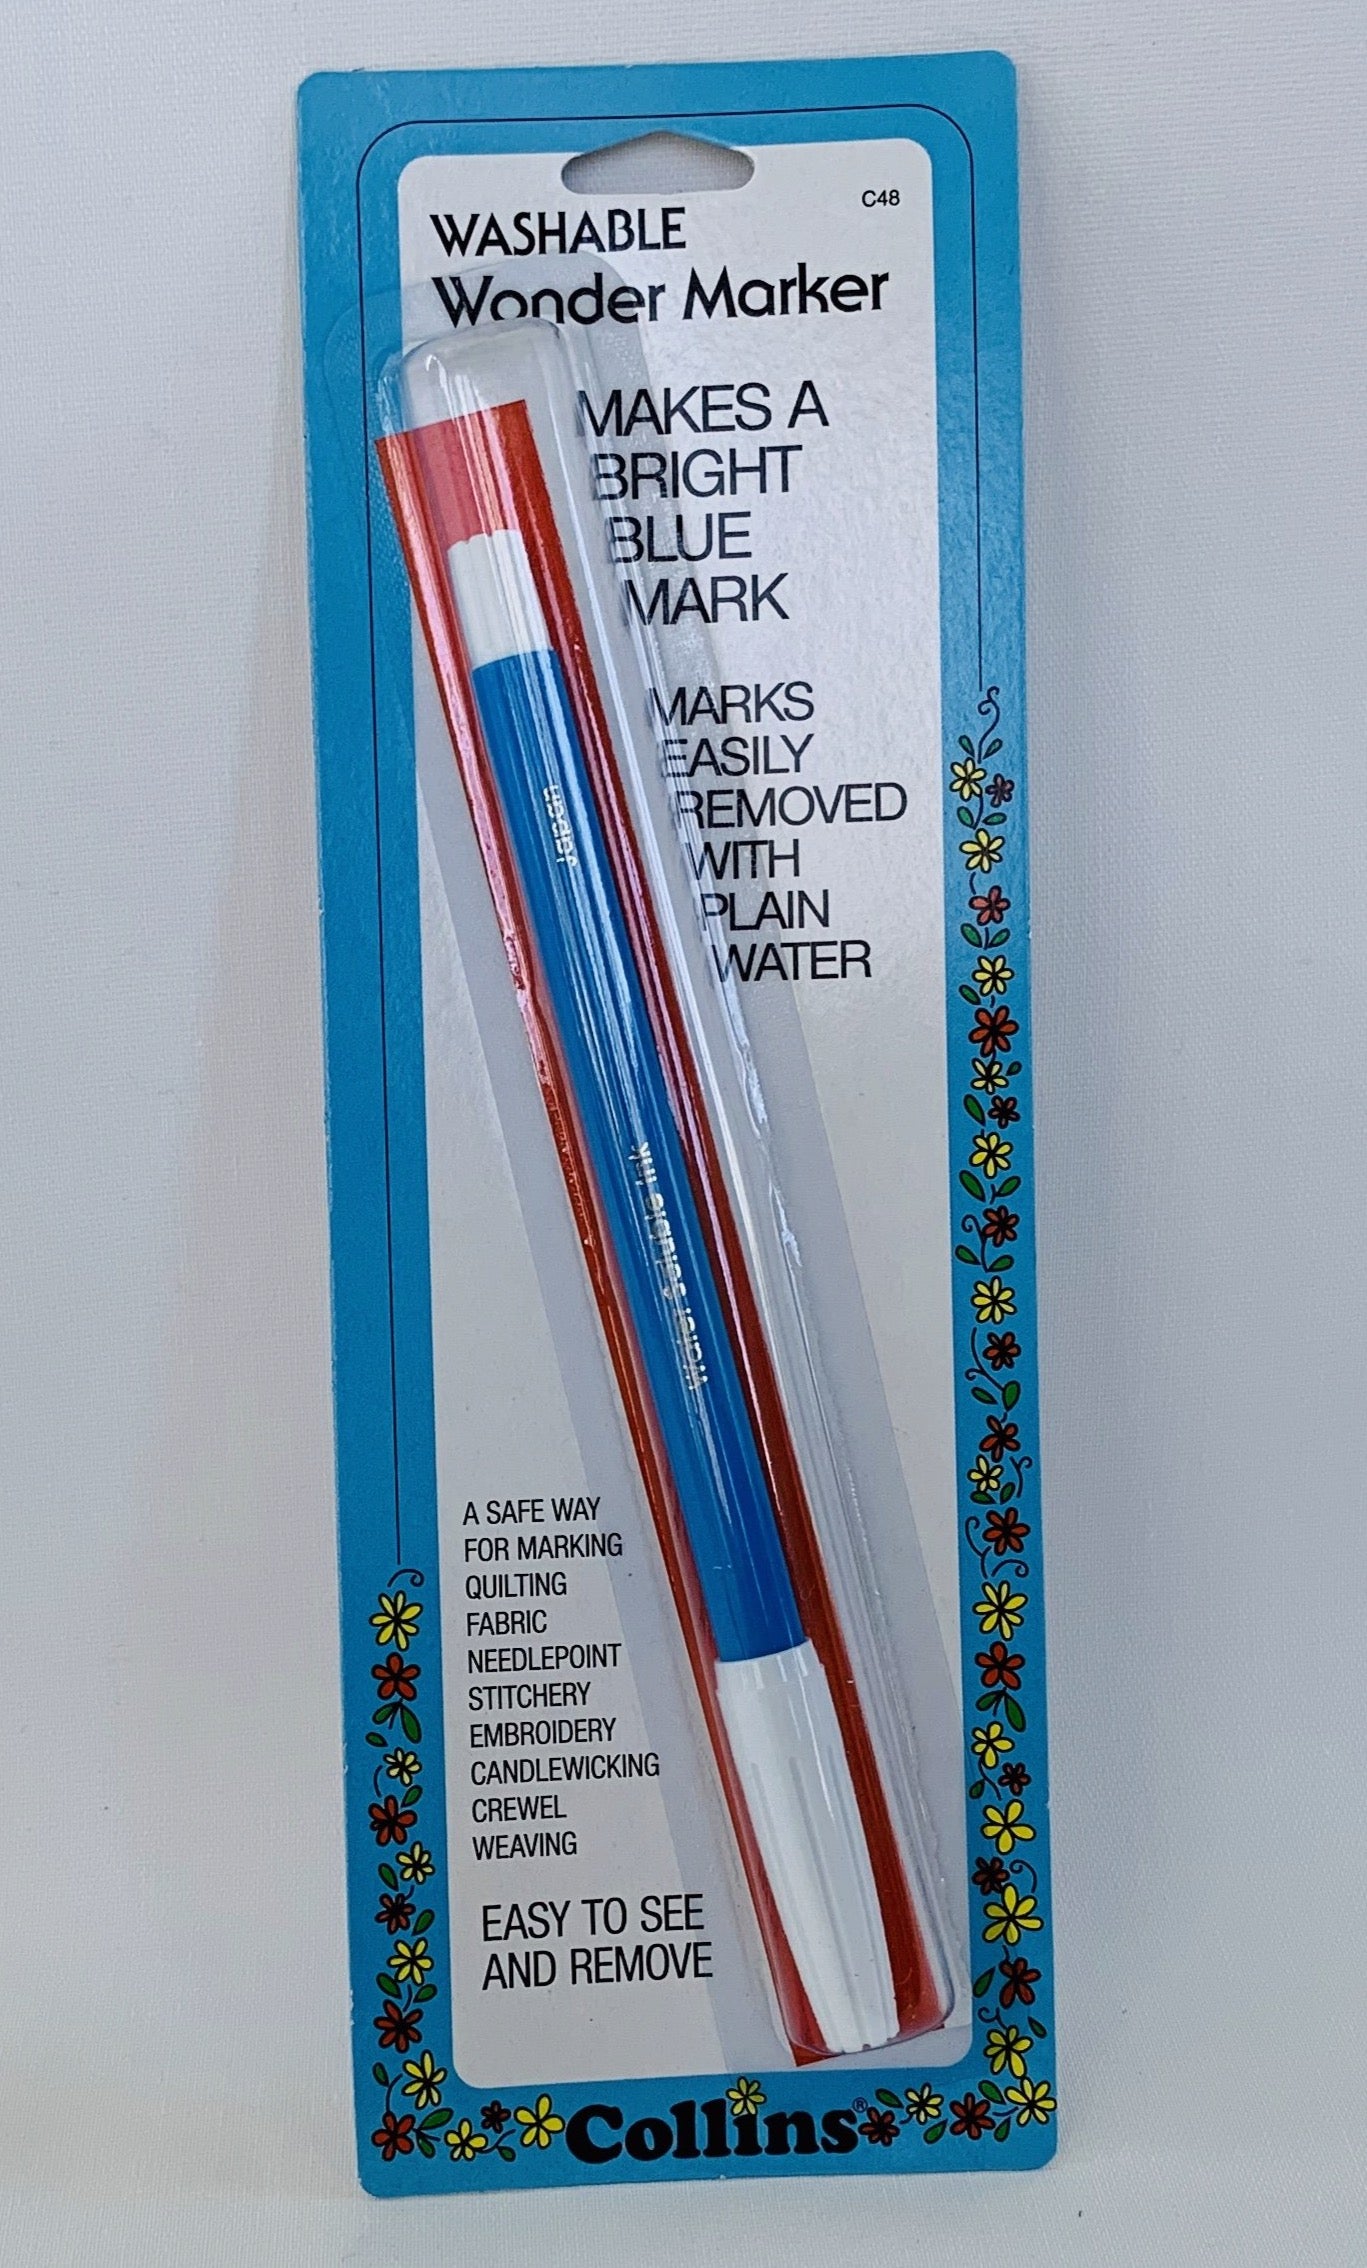 Blue Water Soluble Pen